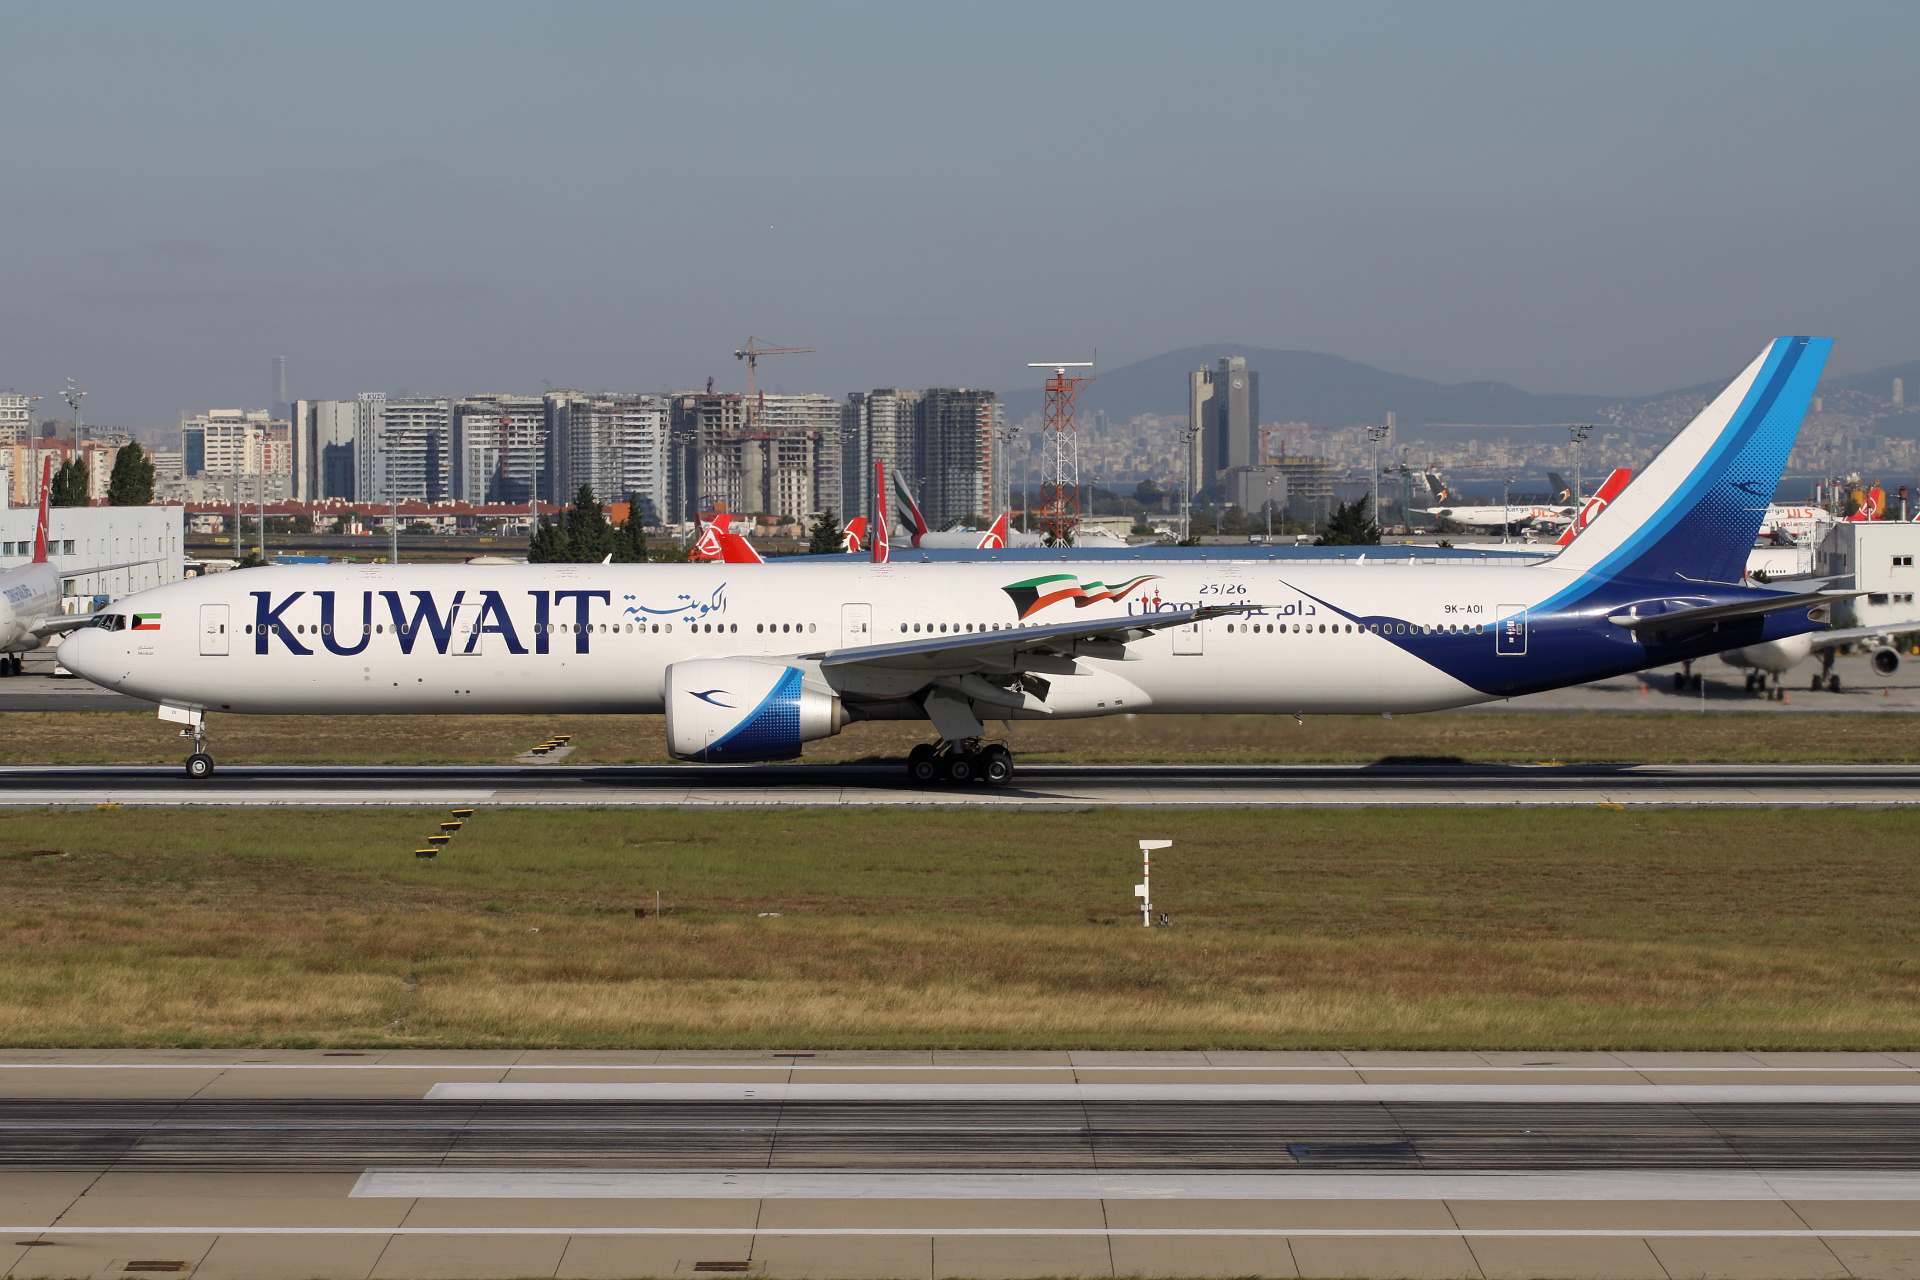 9K-AOI, Kuwait Airways (Samoloty » Port Lotniczy im. Atatürka w Stambule » Boeing 777-300ER)